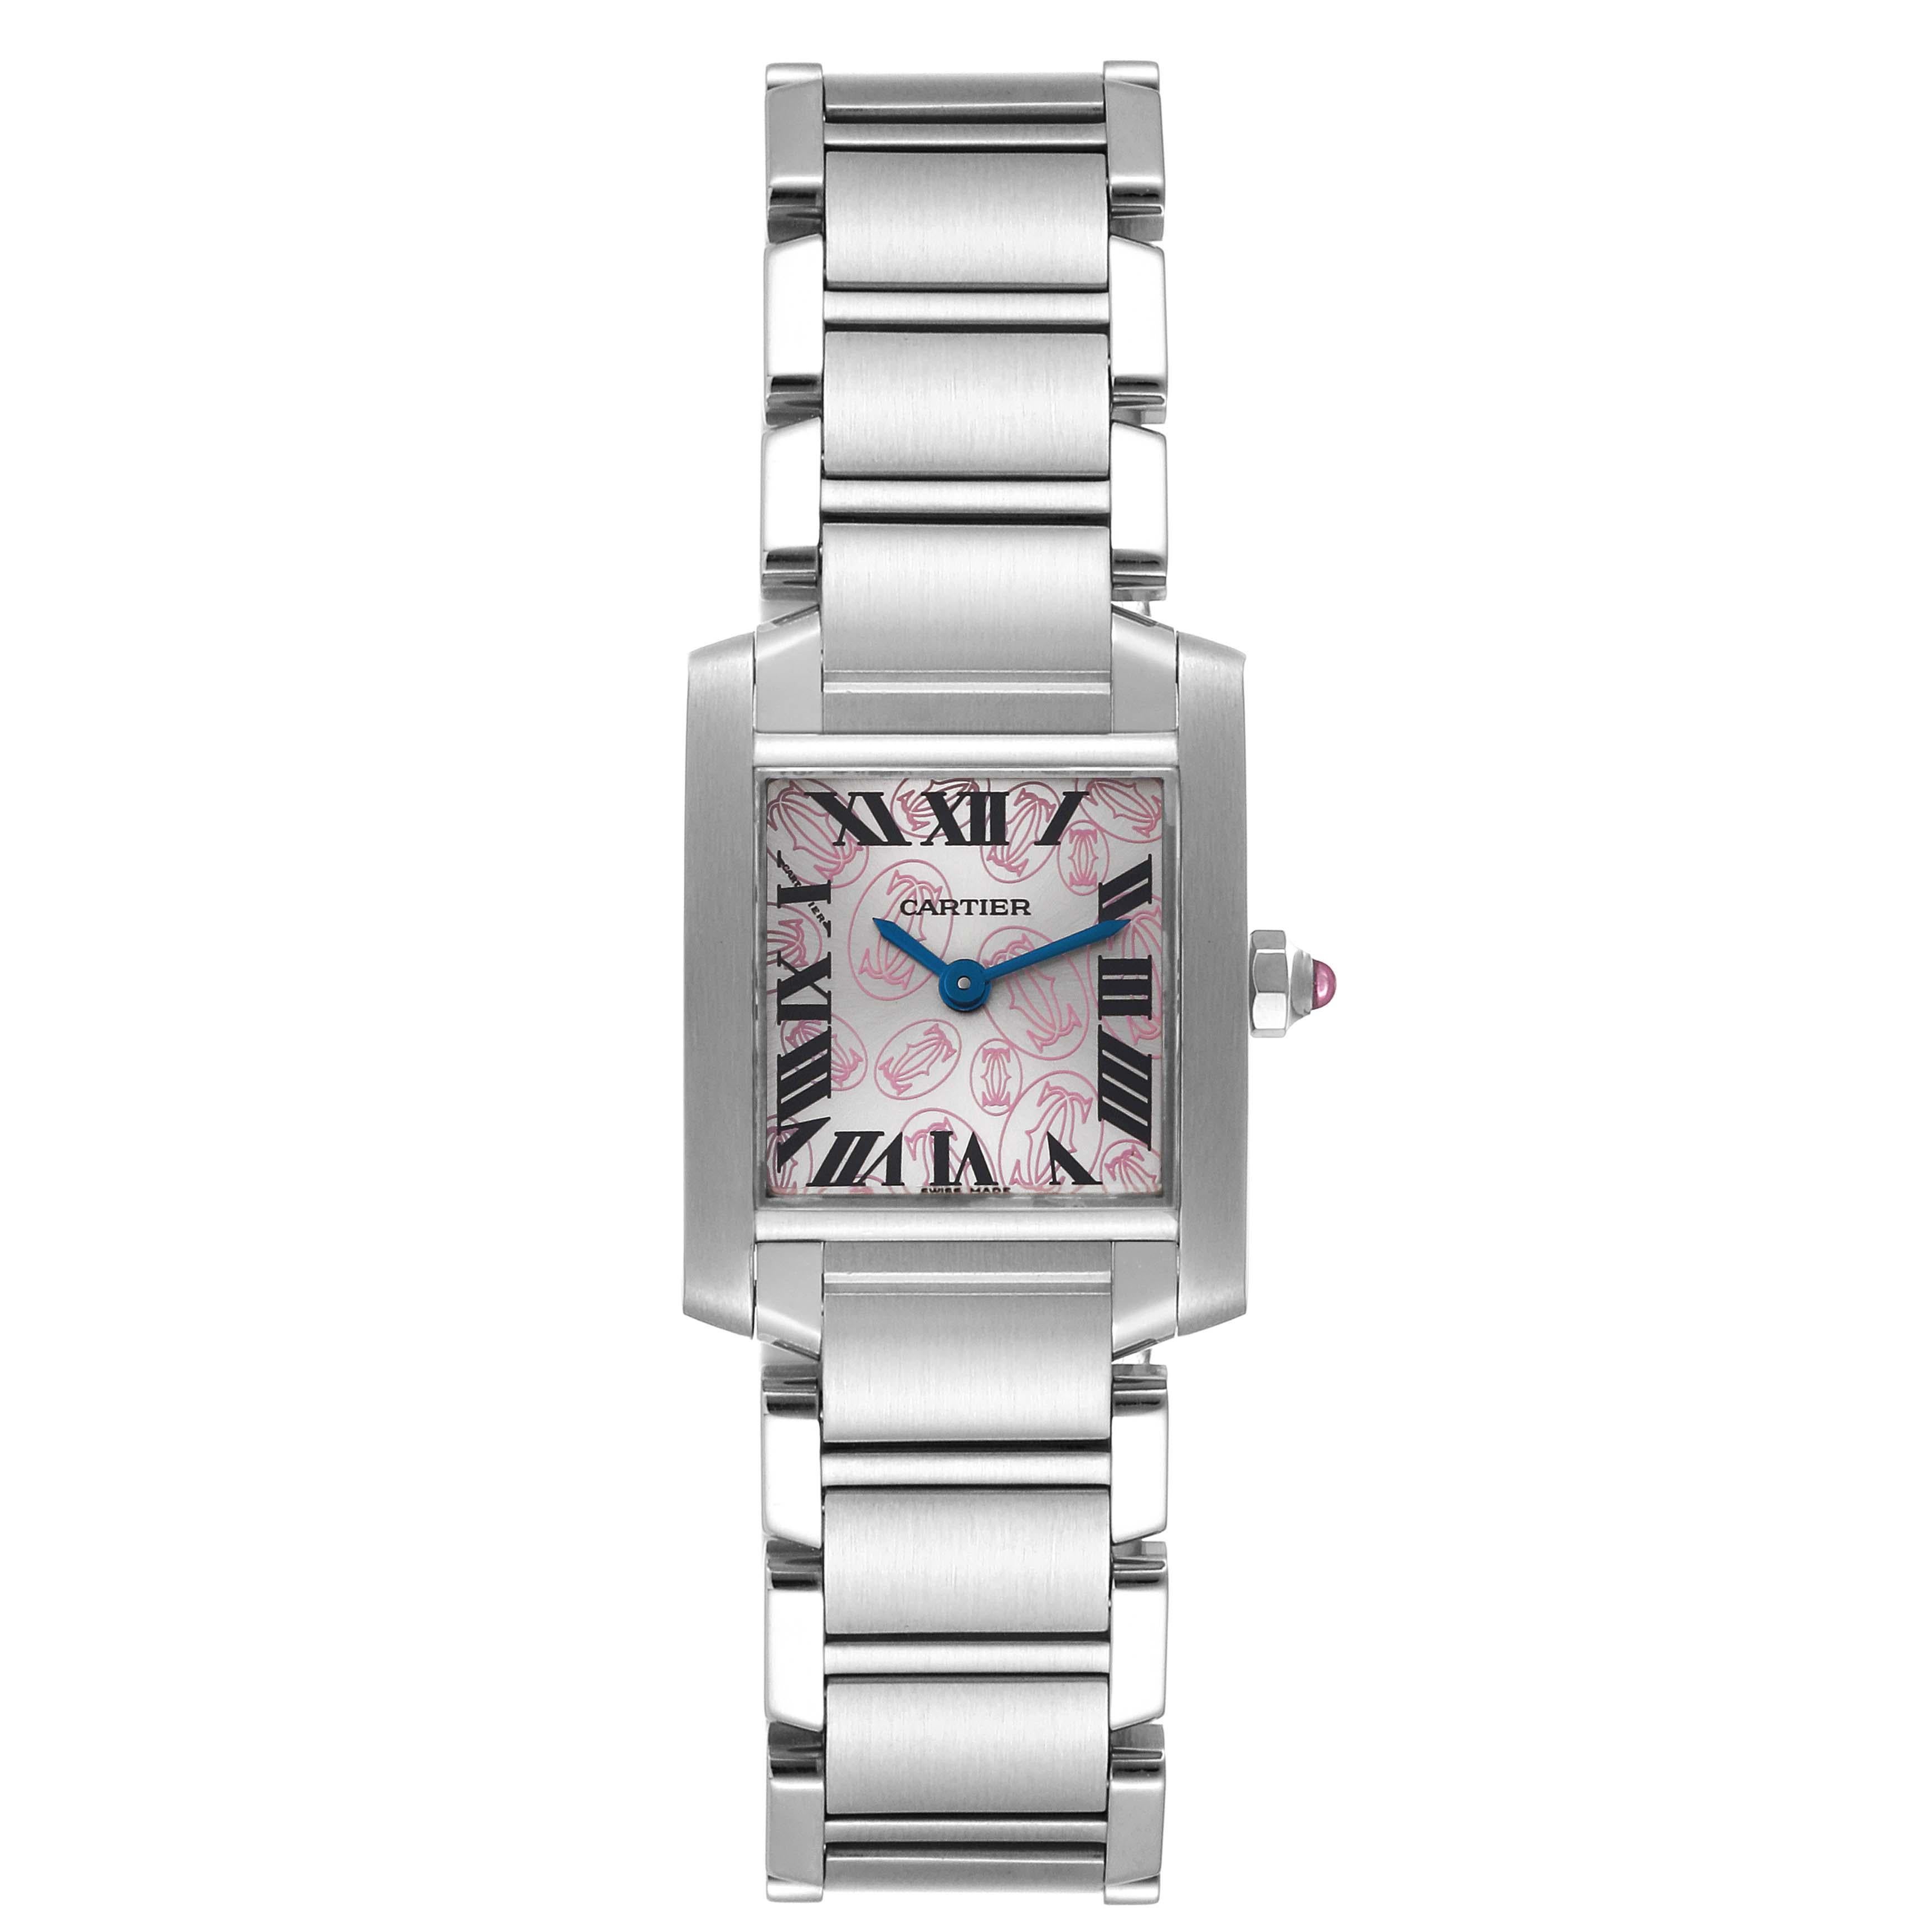 Cartier Tank Francaise Pink Double C Decor Limited Edition Steel Ladies Watch W51031Q3 Box Papers. Mouvement à quartz. Boîtier rectangulaire en acier inoxydable de 20 x 25 mm. Couronne octogonale sertie d'un cabochon de spinelle rose . Verre saphir